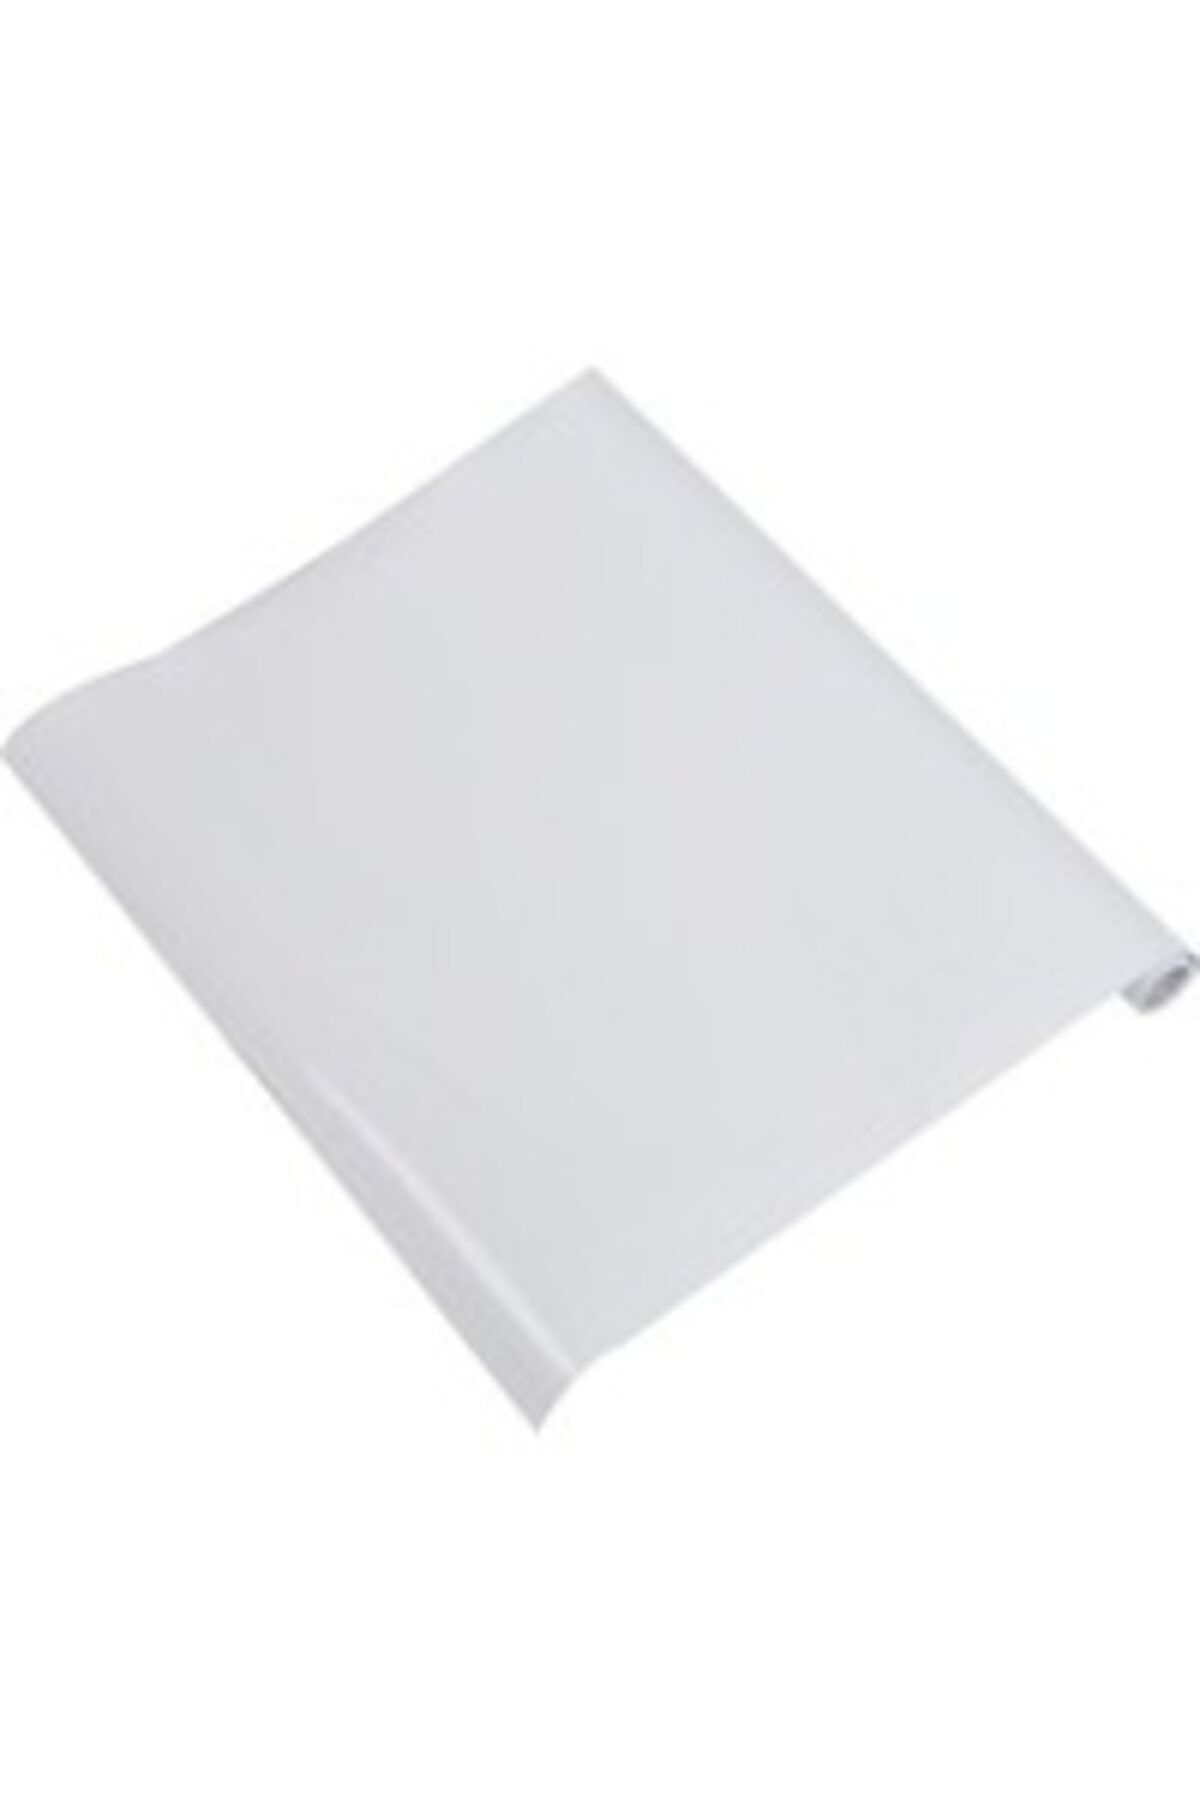 Kaizen Market Sihirli Tahta Beyaz Akıllı Kağıt Tahta 2'li + Silgili Kalem 100 X 150 Cm